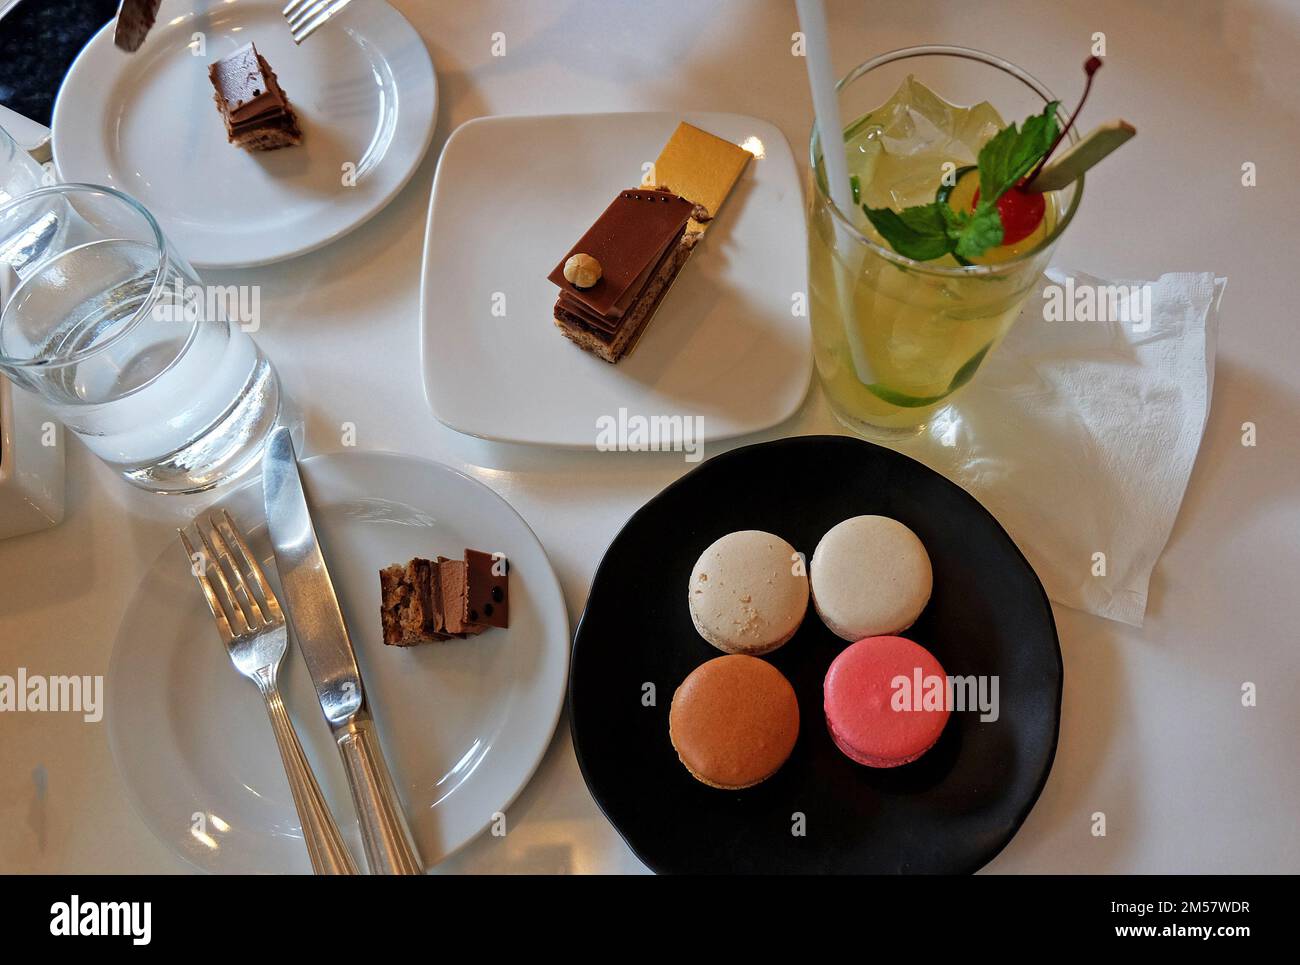 Gâteau d'opéra au chocolat français et assortiment de macarons (macarons) servis avec de la limonade glacée Banque D'Images